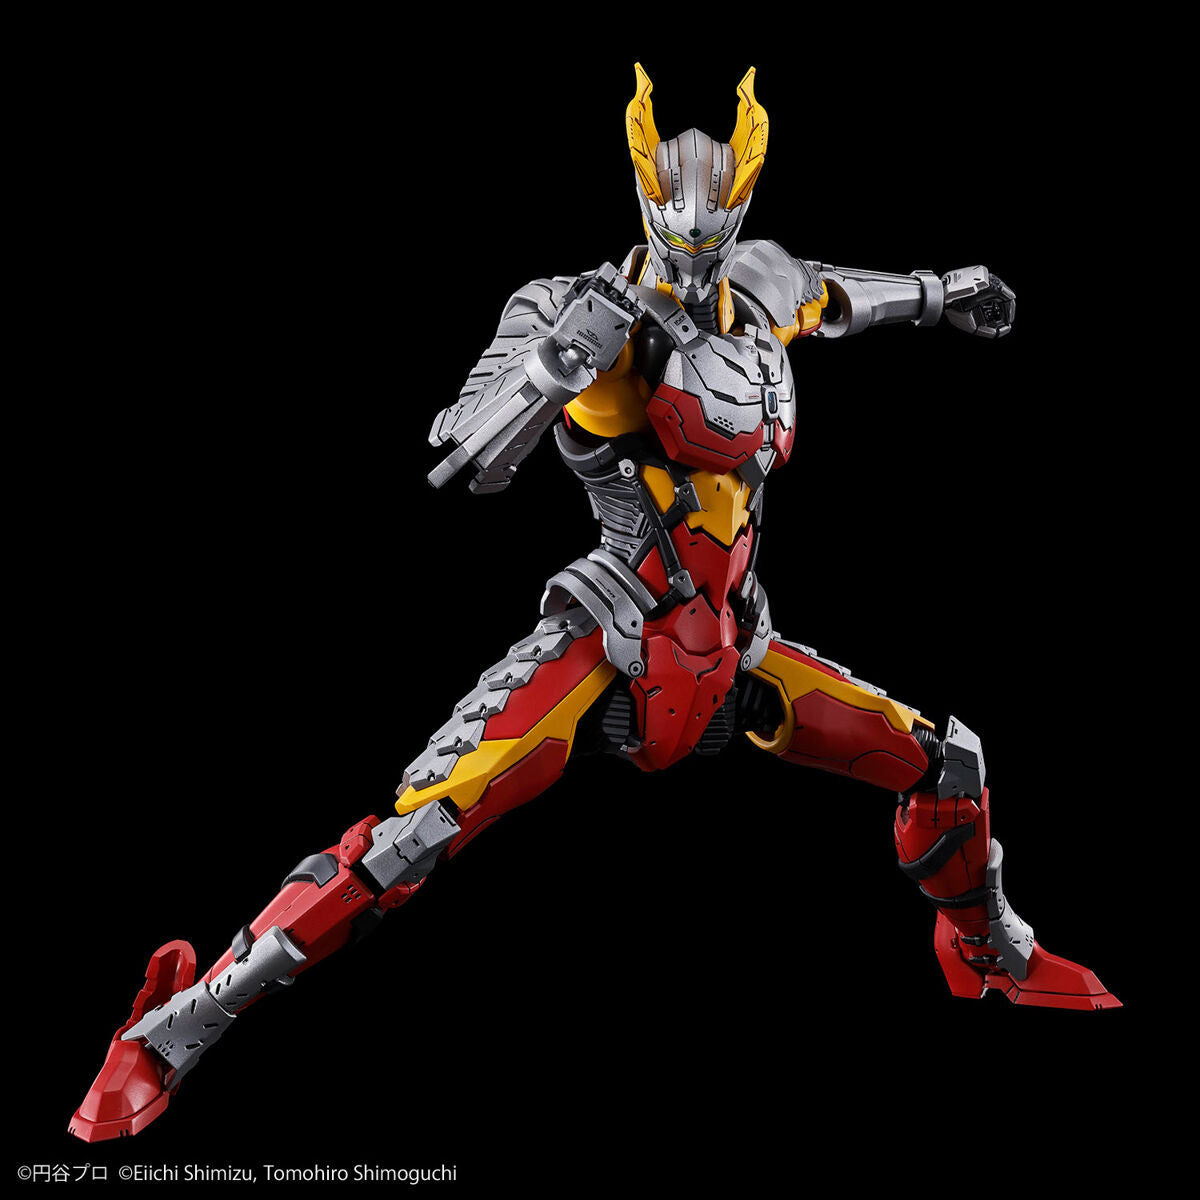 Figure-rise Standard Ultraman Suit Zero [SC specification] -Action-